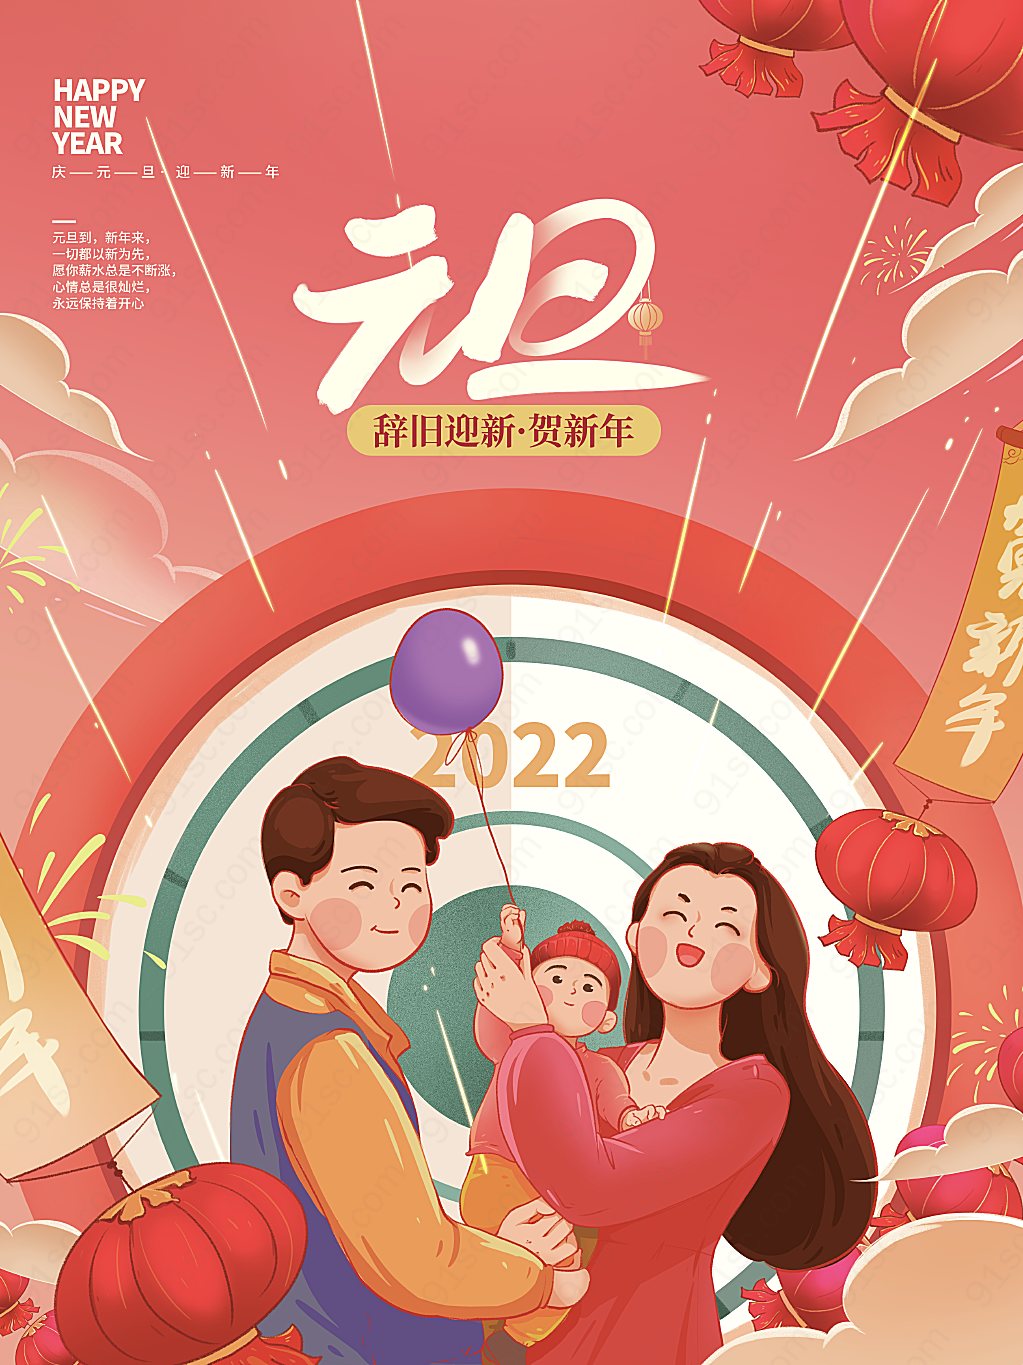 新年元旦快乐节日节日海报